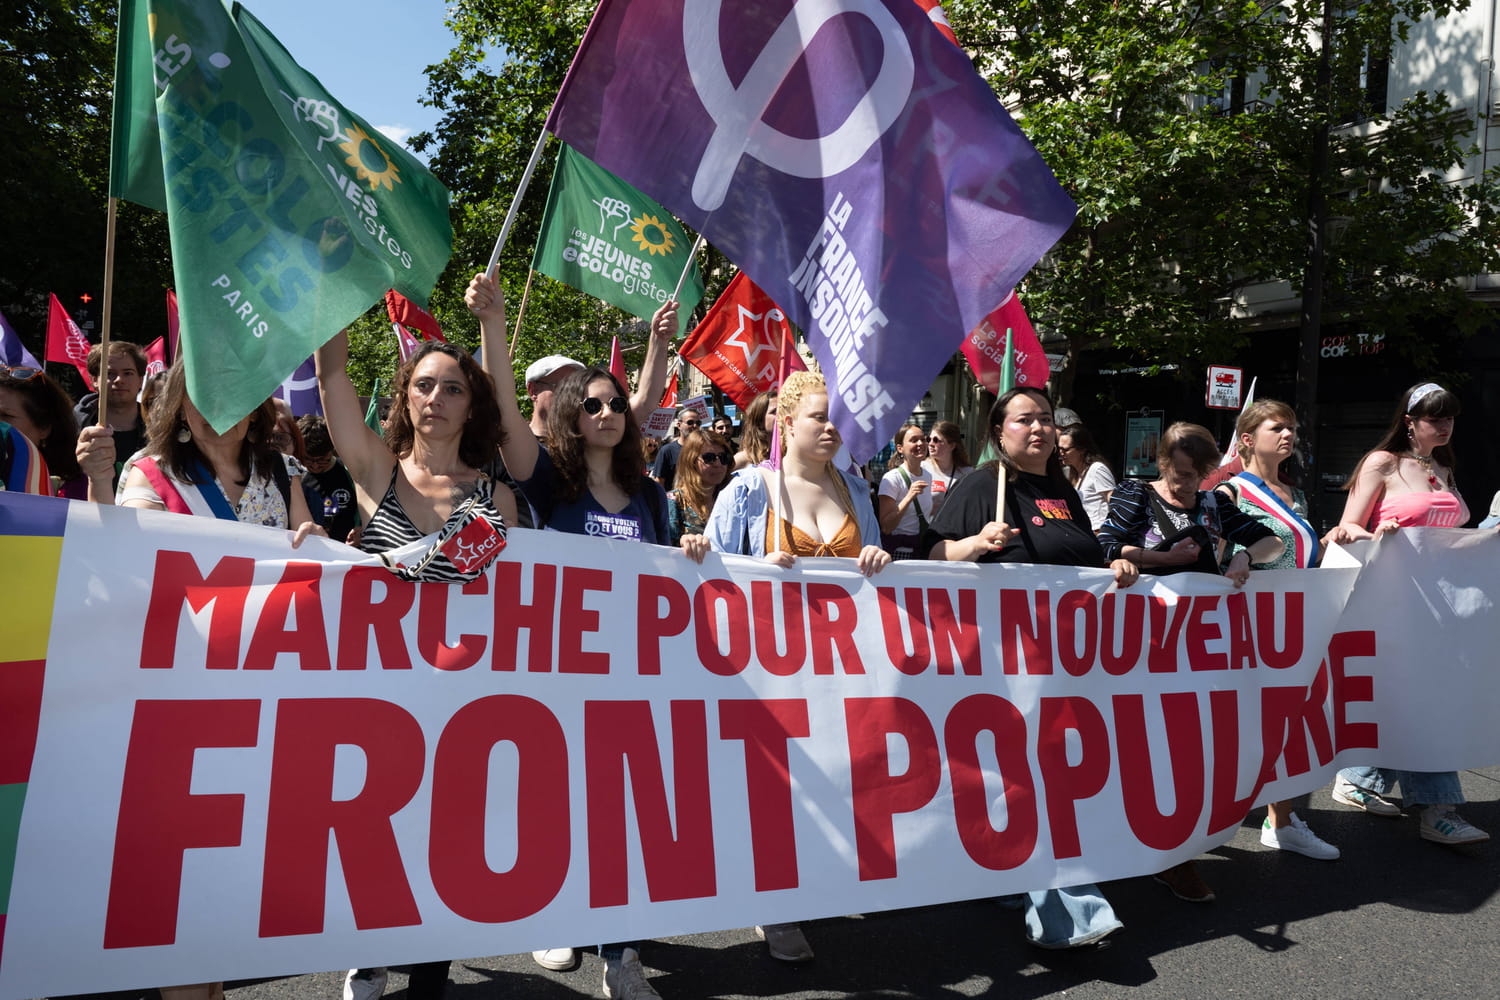 Manifestations contre le RN : Marseille, Nîmes, Arras, les dates annoncées